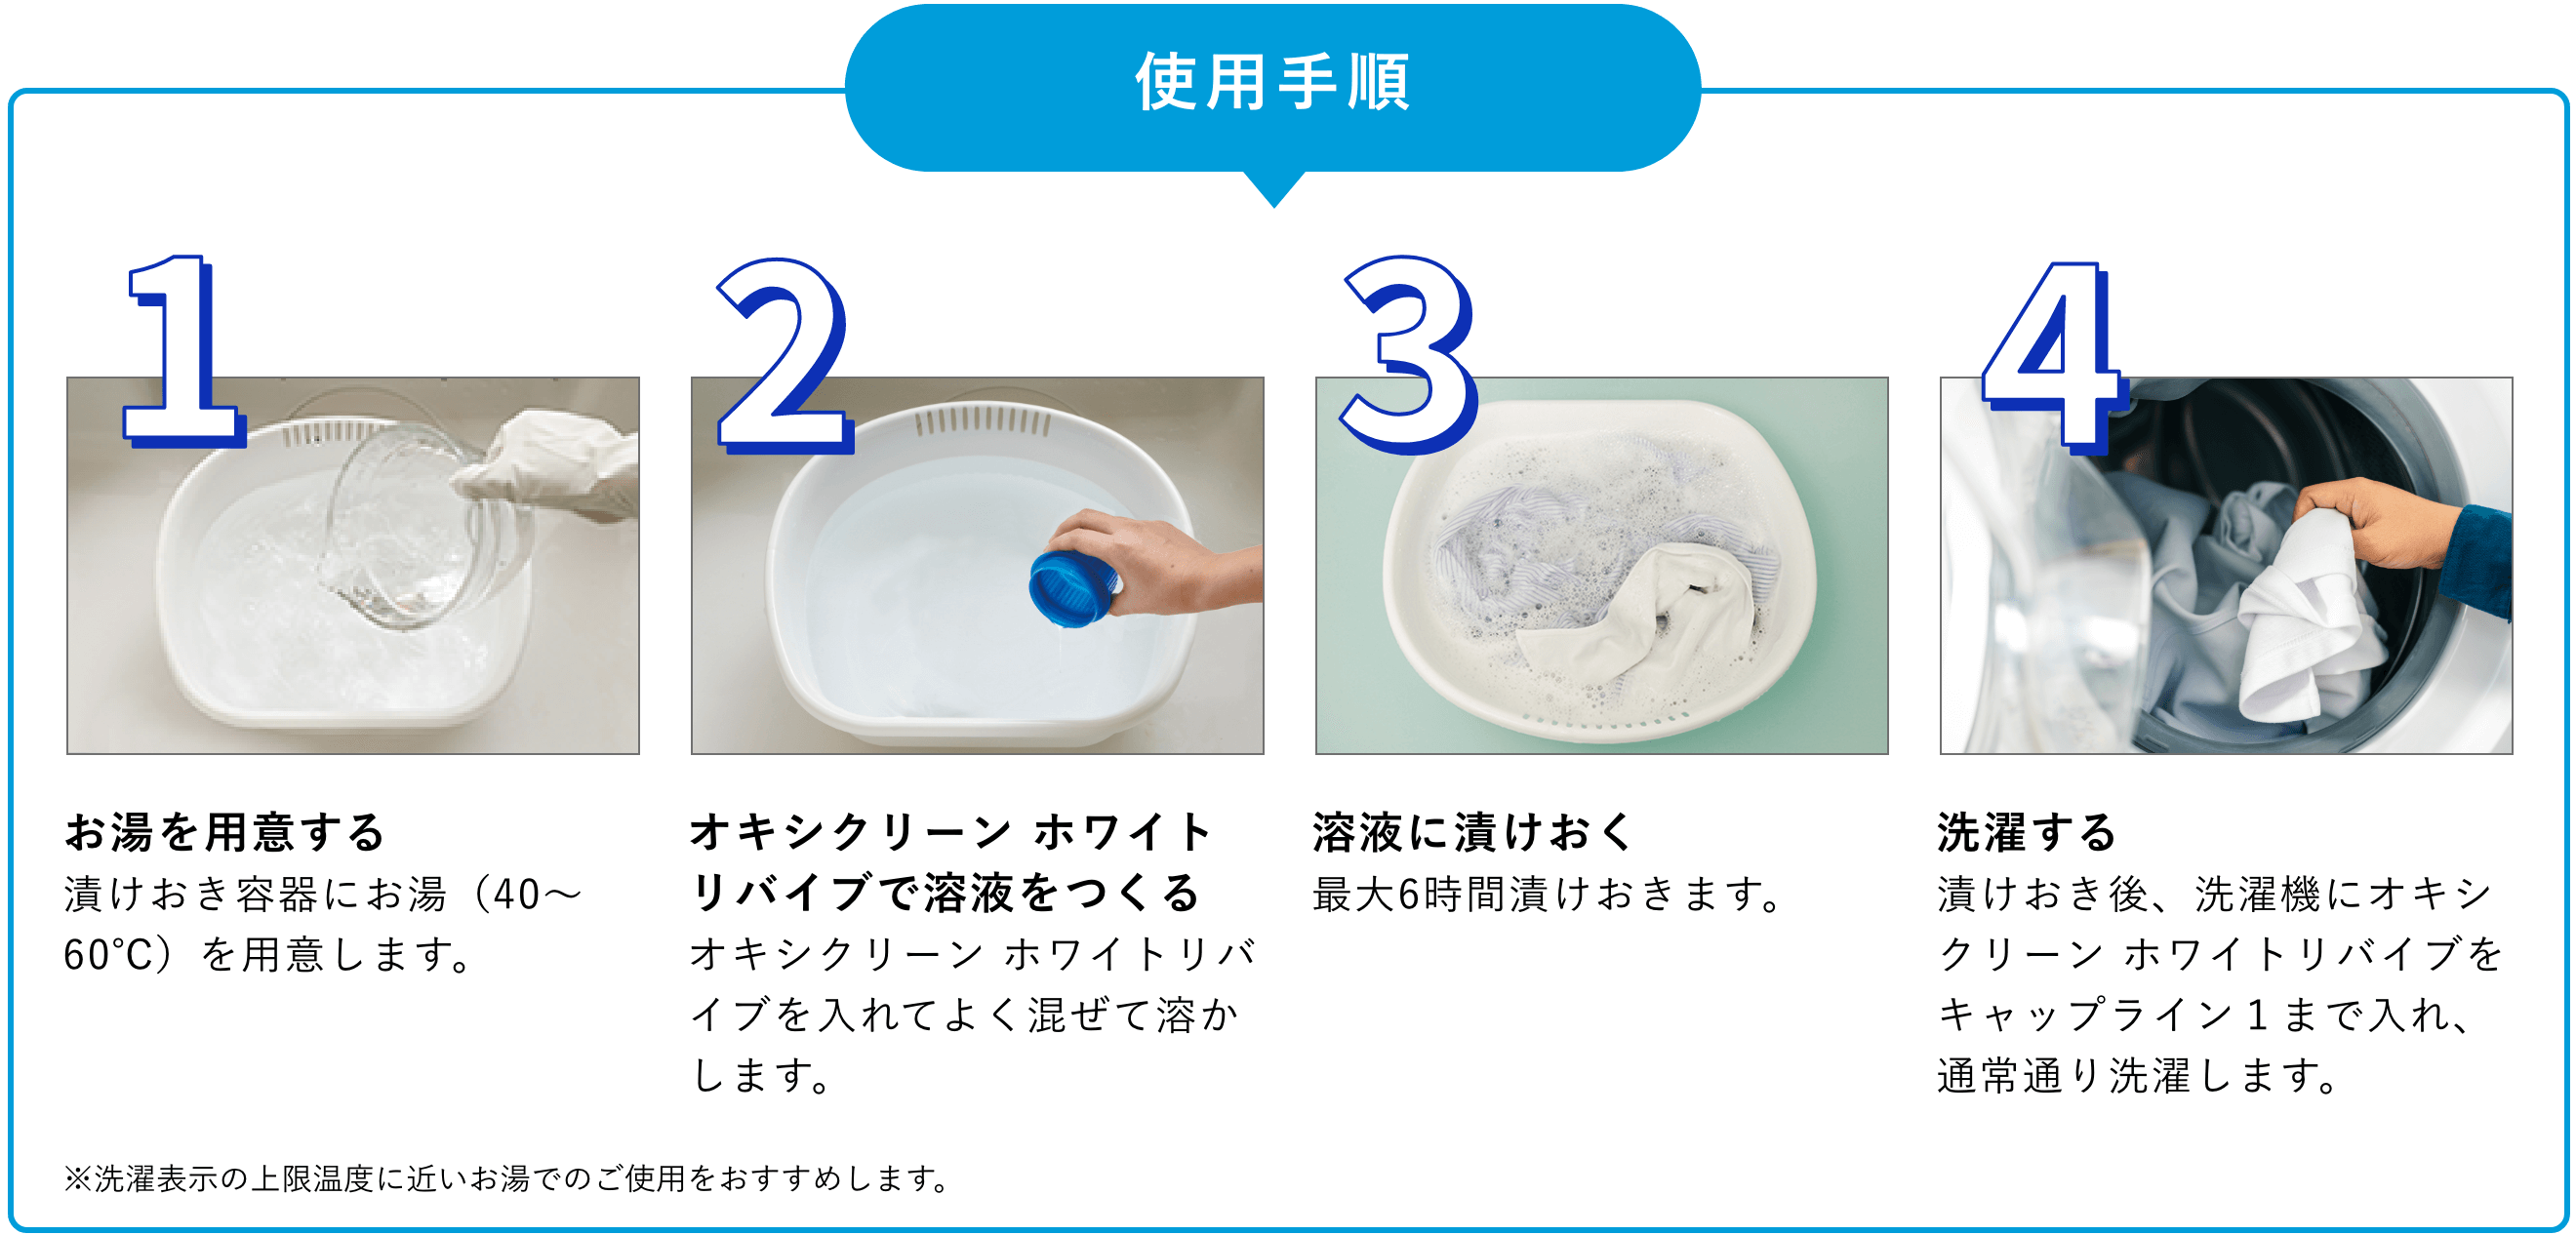 1.お湯を用意する。漬けおき容器にお湯（40～60℃）を用意します。2.オキシクリーン ホワイトリバイブで溶液をつくる。オキシクリーン ホワイトリバイブを入れてよく混ぜて溶かします。3.溶液に漬けおく。最大6時間漬けおきます。4.洗濯する。漬けおき後、洗濯機にオキシクリーン ホワイトリバイブをキャップライン１まで入れ、通常通り洗濯します。